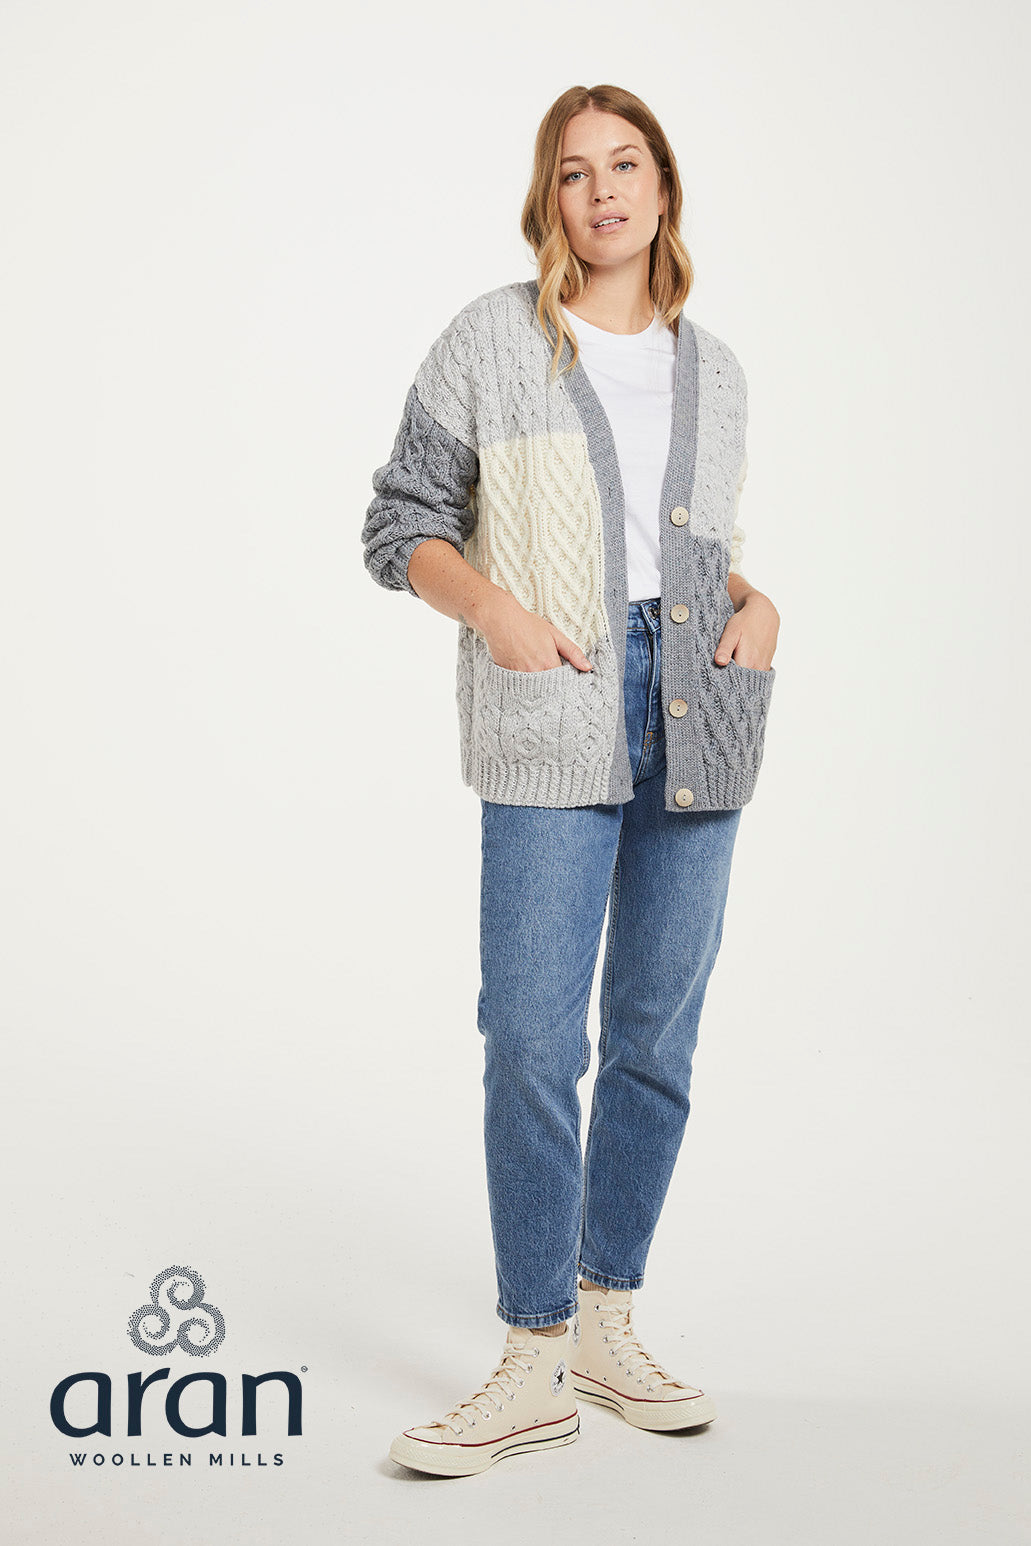 Aran Woollen Mills - B215 | Damen-Cardigan aus Wolle mit Knöpfen